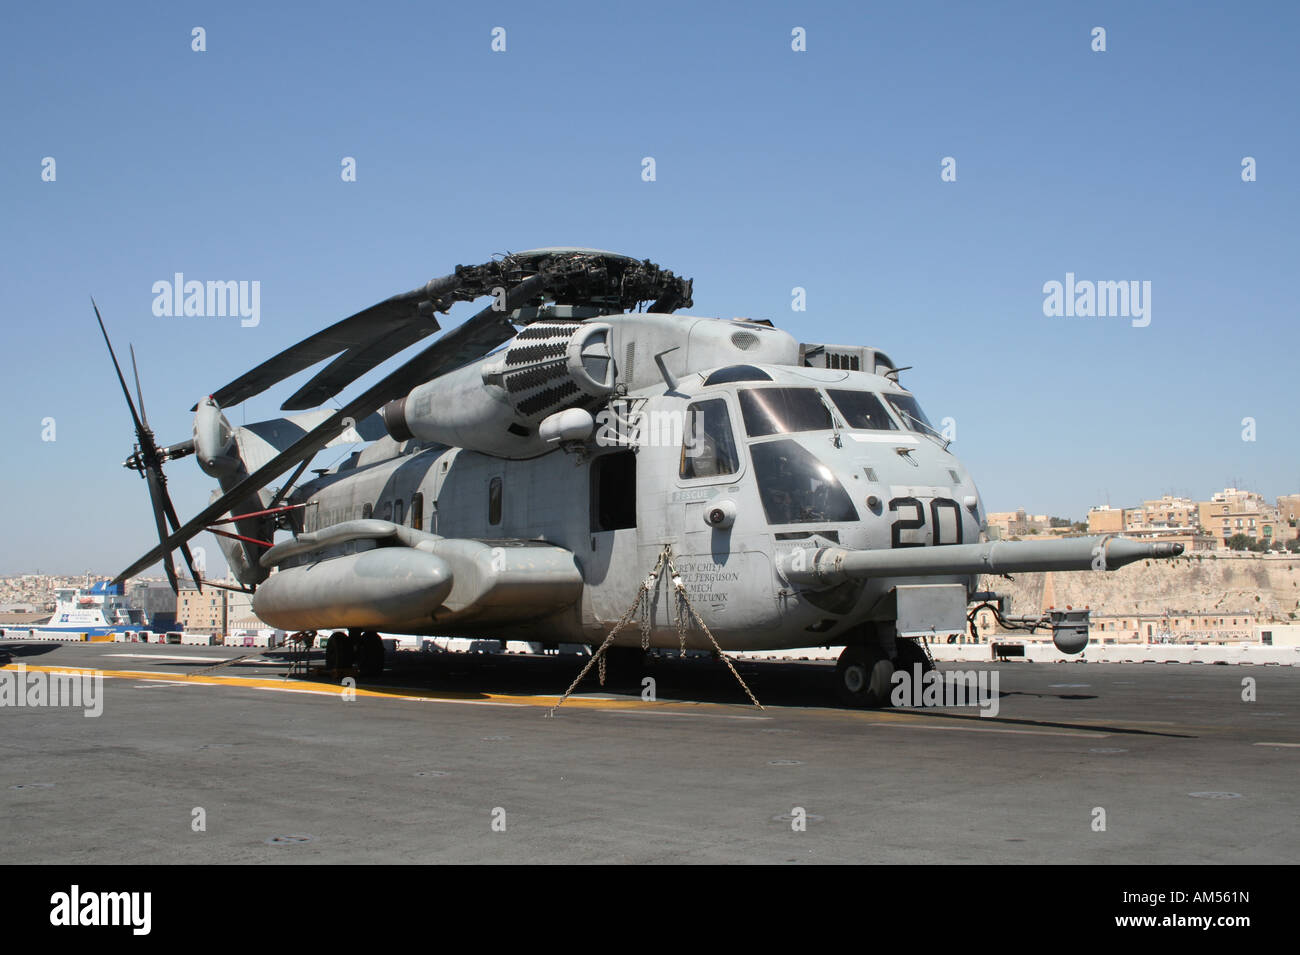 Un Sikorsky tipo CH-53E Super Stallion helicóptero operado por los US Marines a bordo del buque de asalto anfibio USS Kearsarge Foto de stock